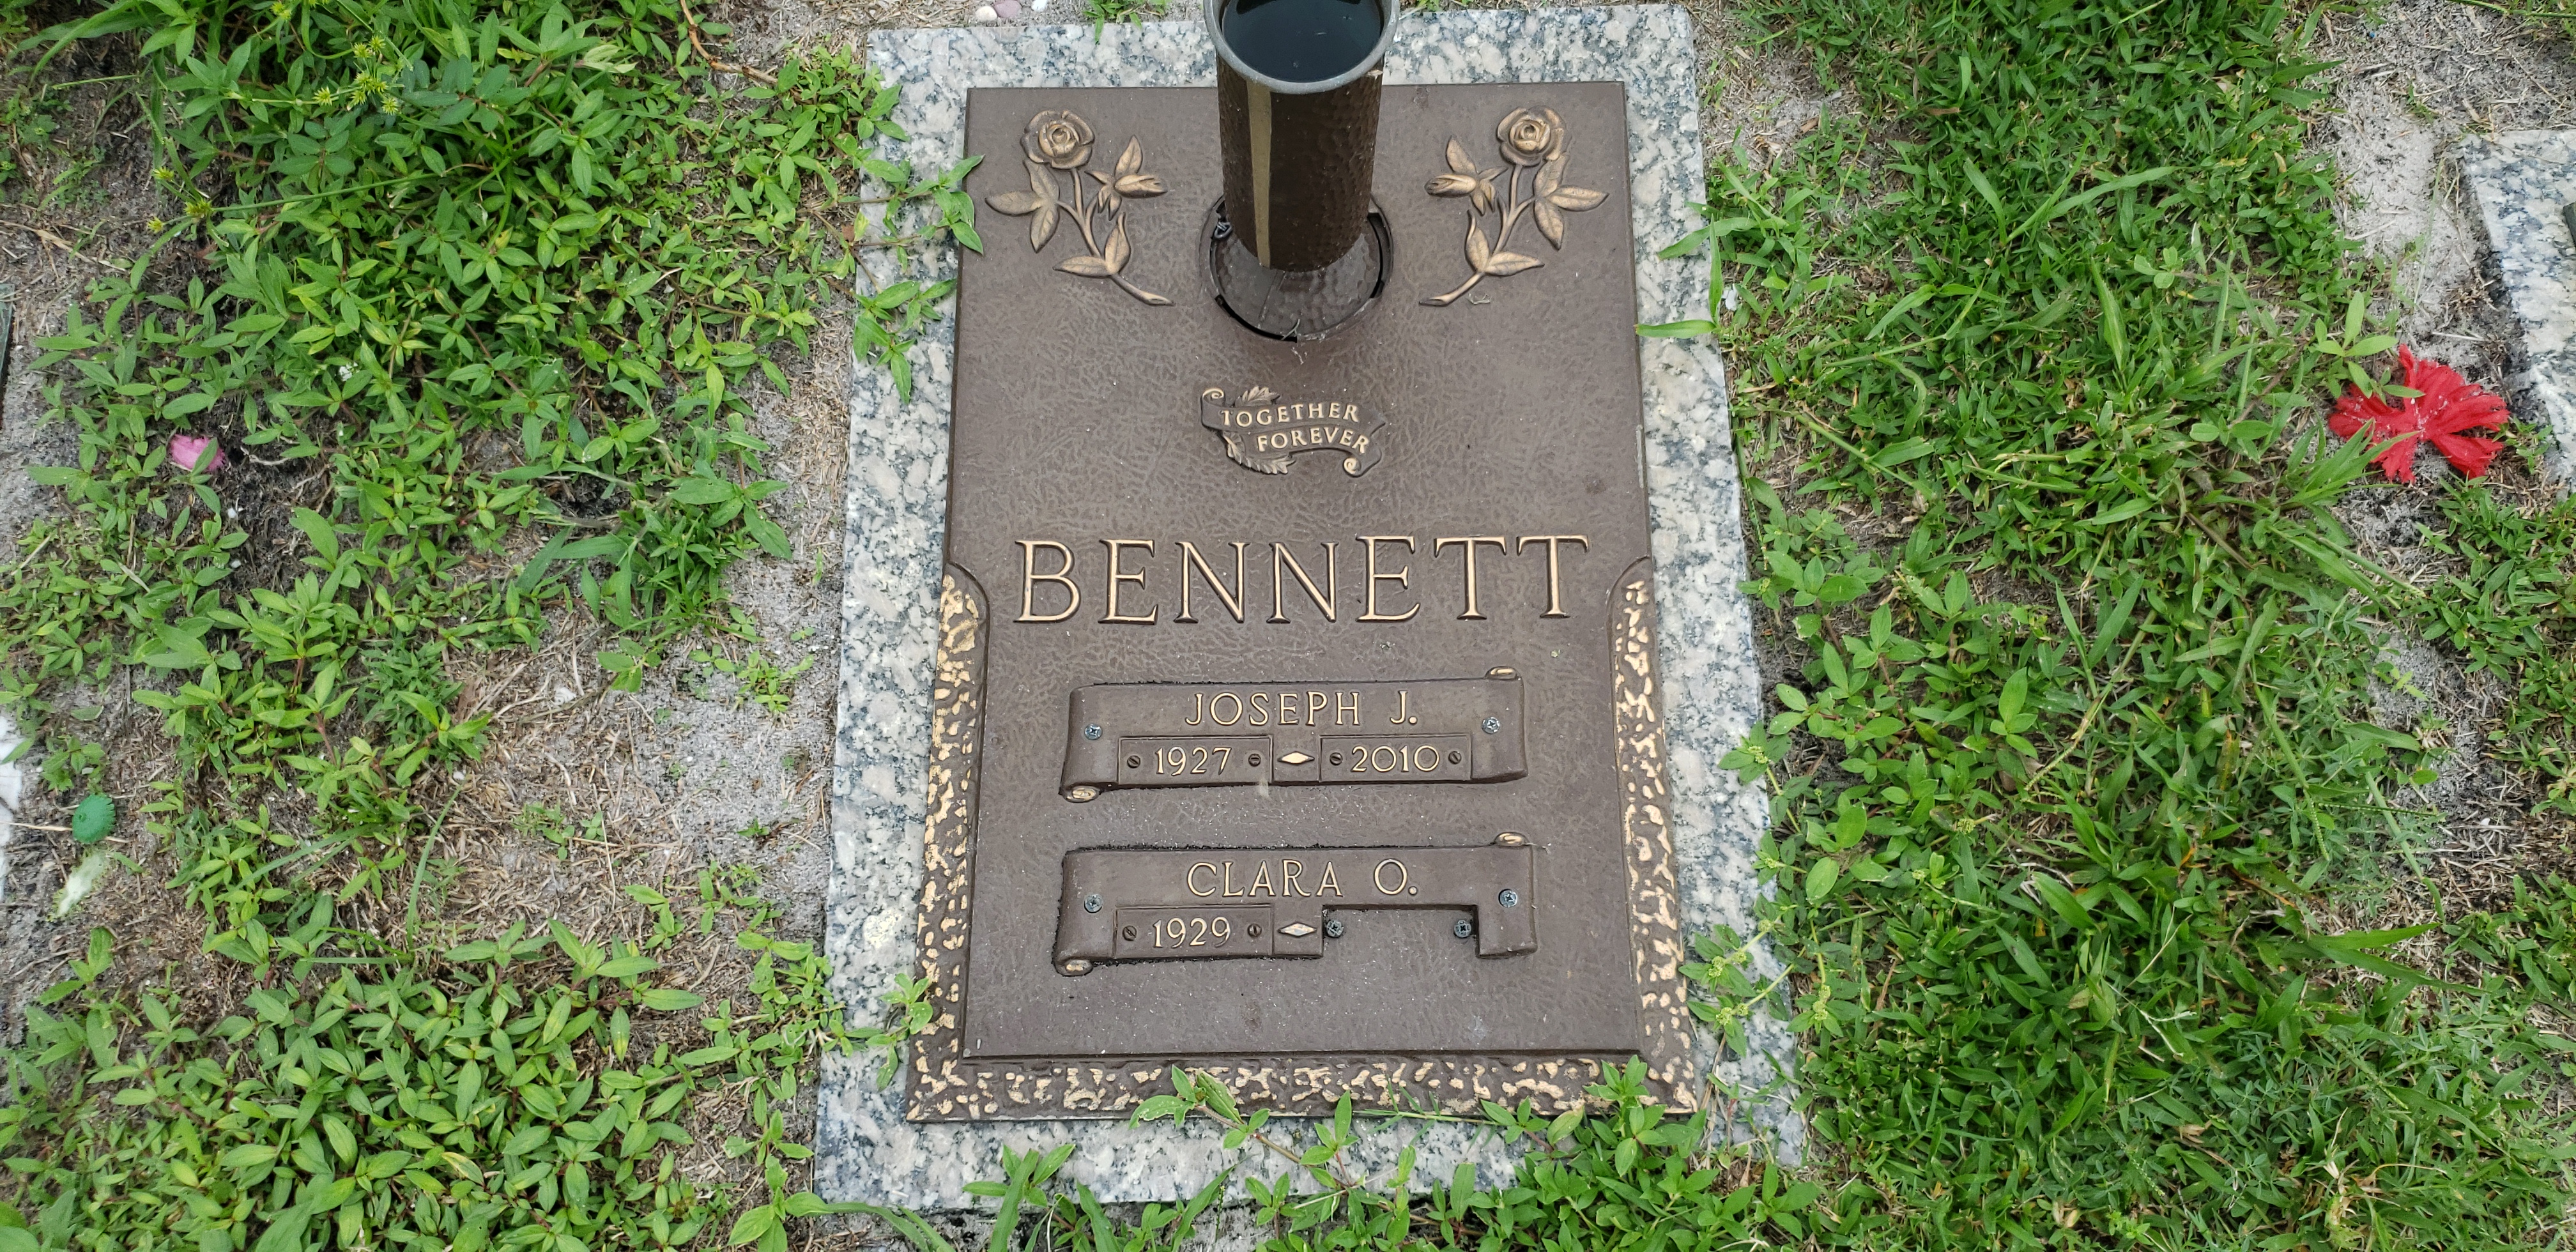 Joseph J Bennett